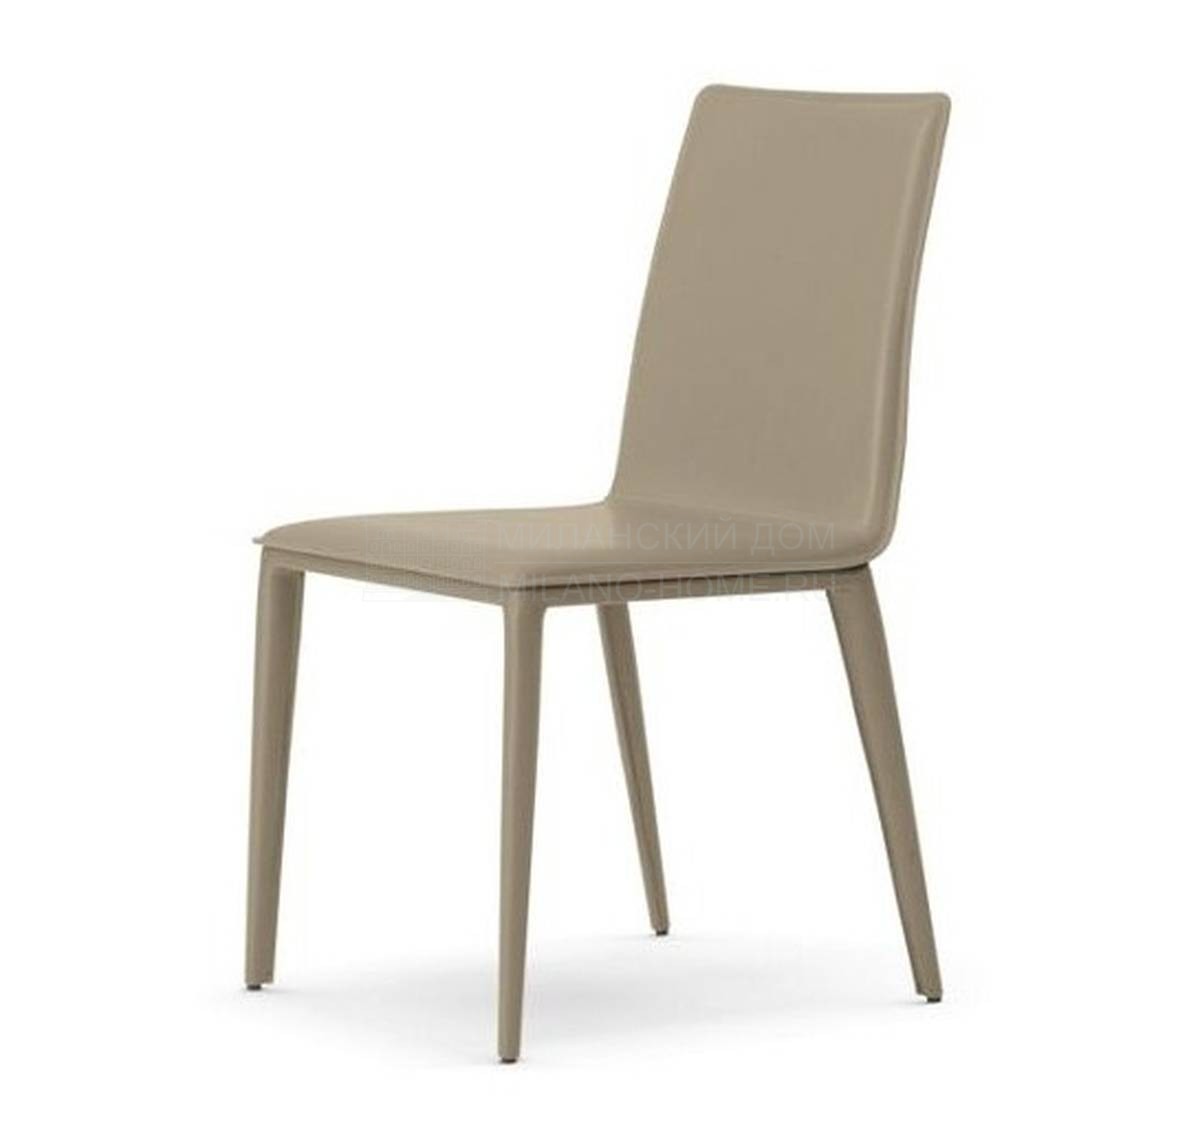 Кожаный стул Elisa chair из Франции фабрики ROCHE BOBOIS